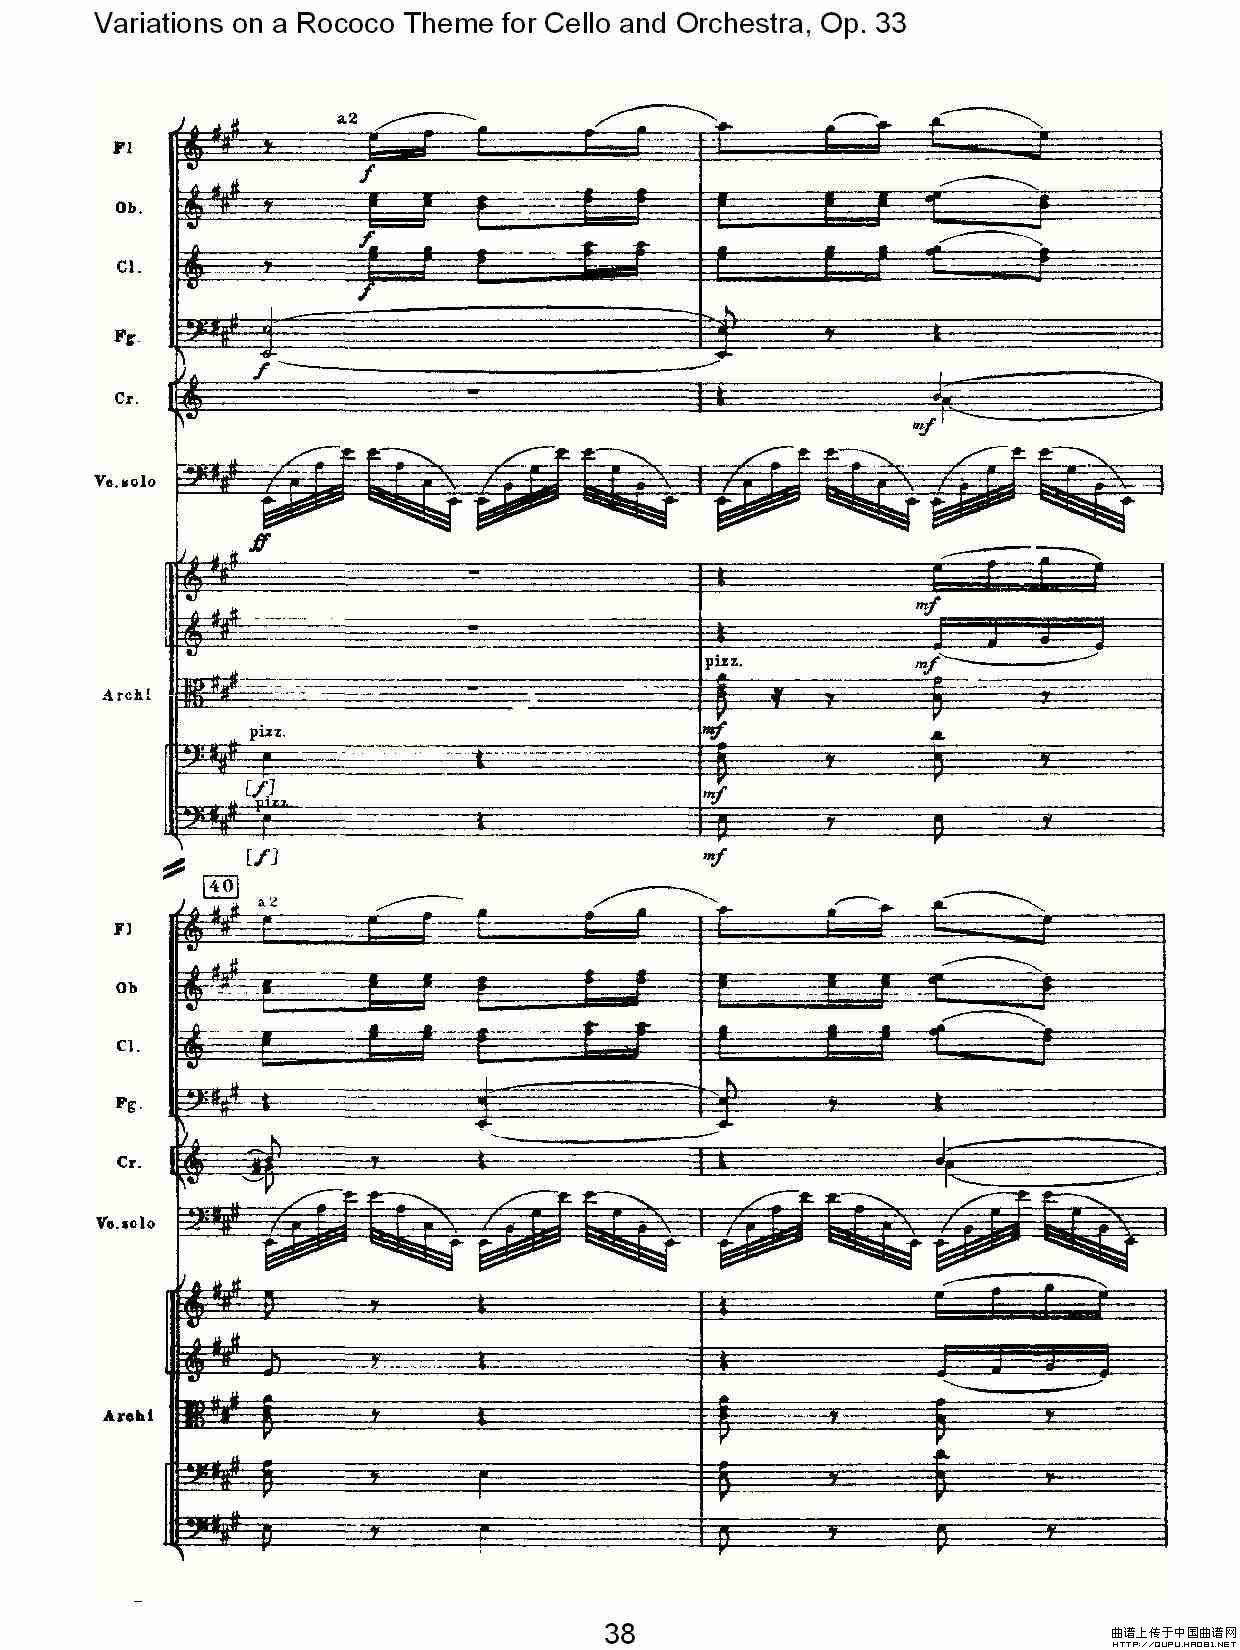 大提琴与管弦乐洛可可主题a小调变奏曲Op.33小提琴谱